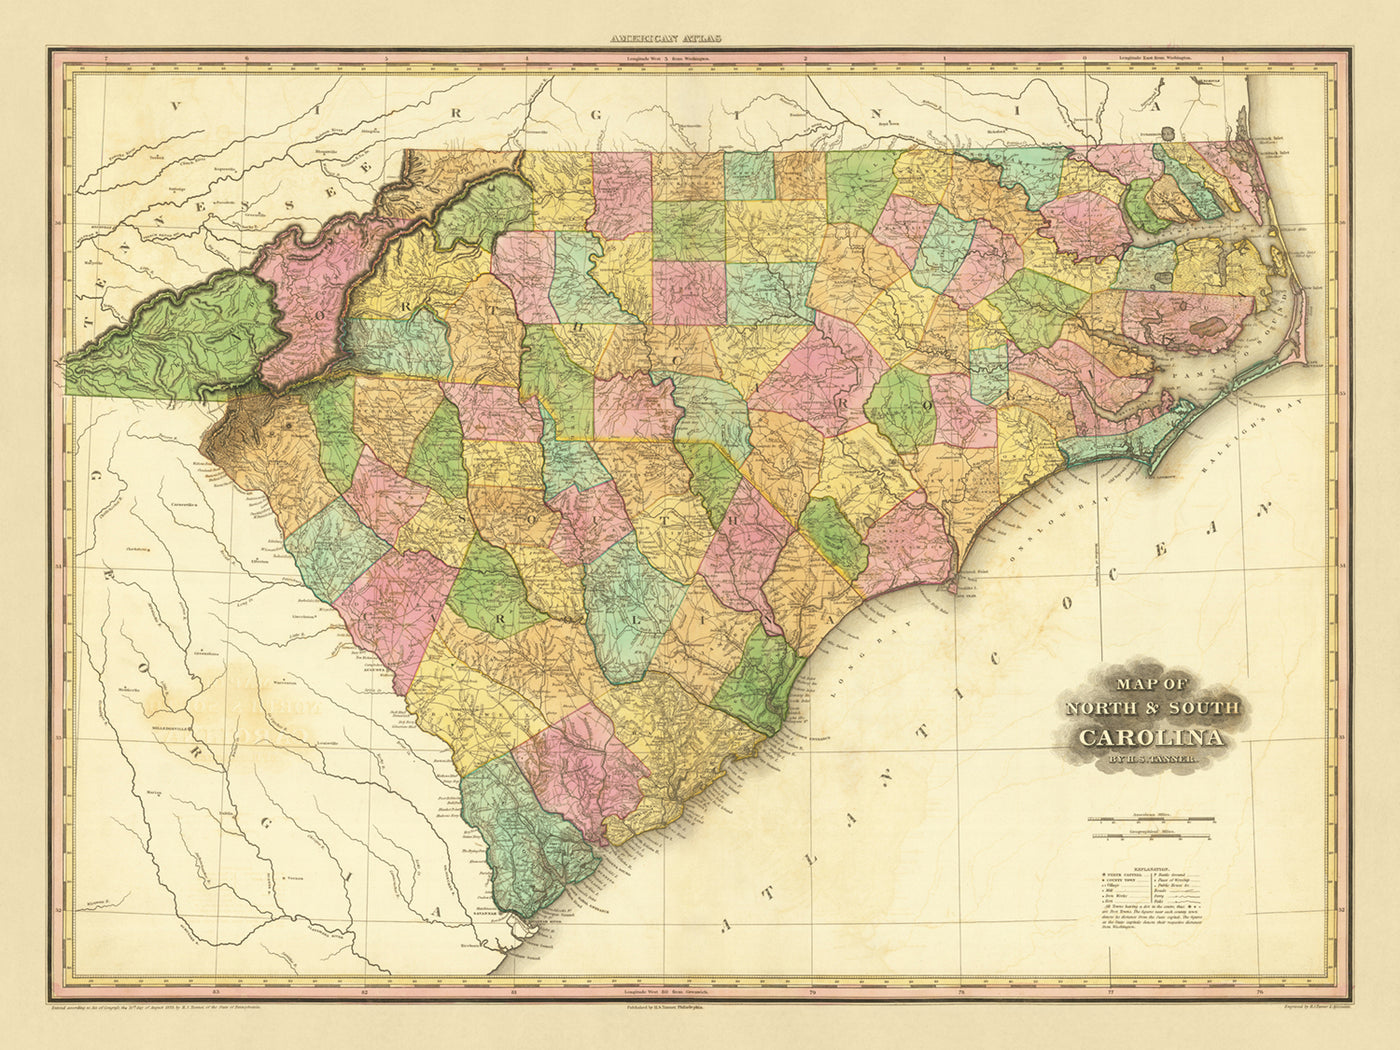 Alte Karte von North & South Carolina von Tanner, 1823: Charleston, Columbia, Charlotte, Raleigh und Wilmington